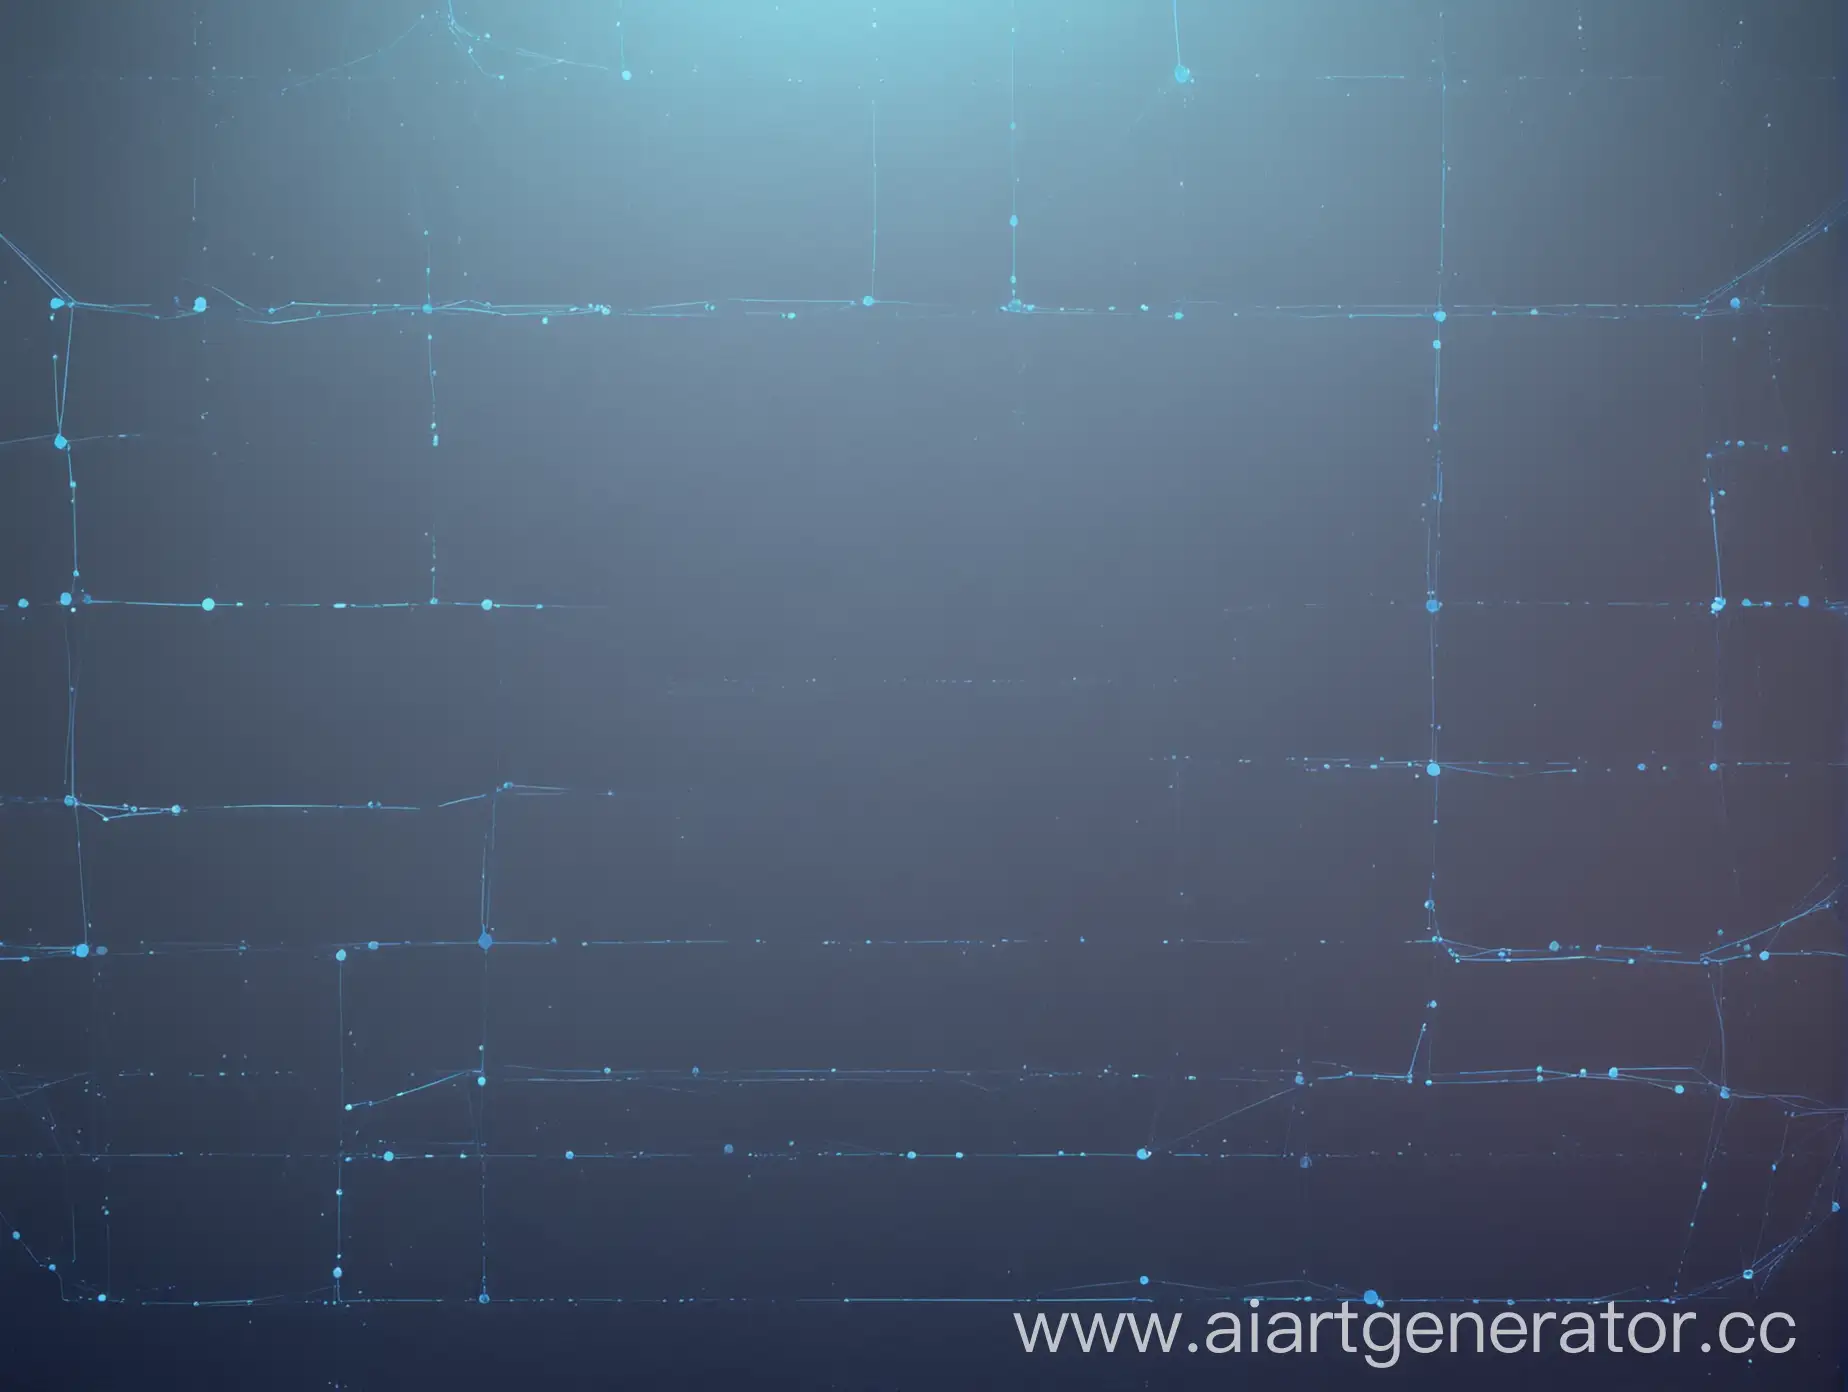 фон для видео в спокойный нейтральных тонах синих оттенков, градиент, на фоне изображены тонкие линии напоминающие блокчейн и будущее